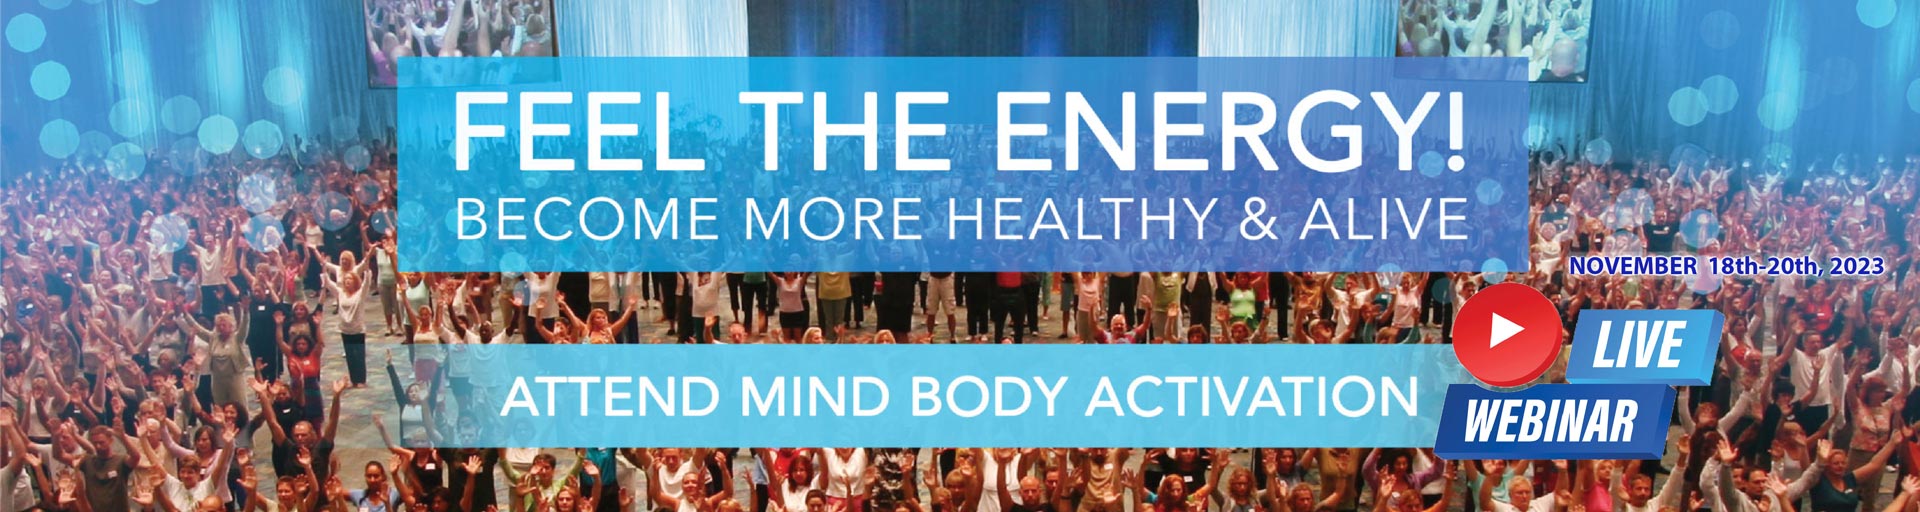 Mind Body Activation Live Webinar Event